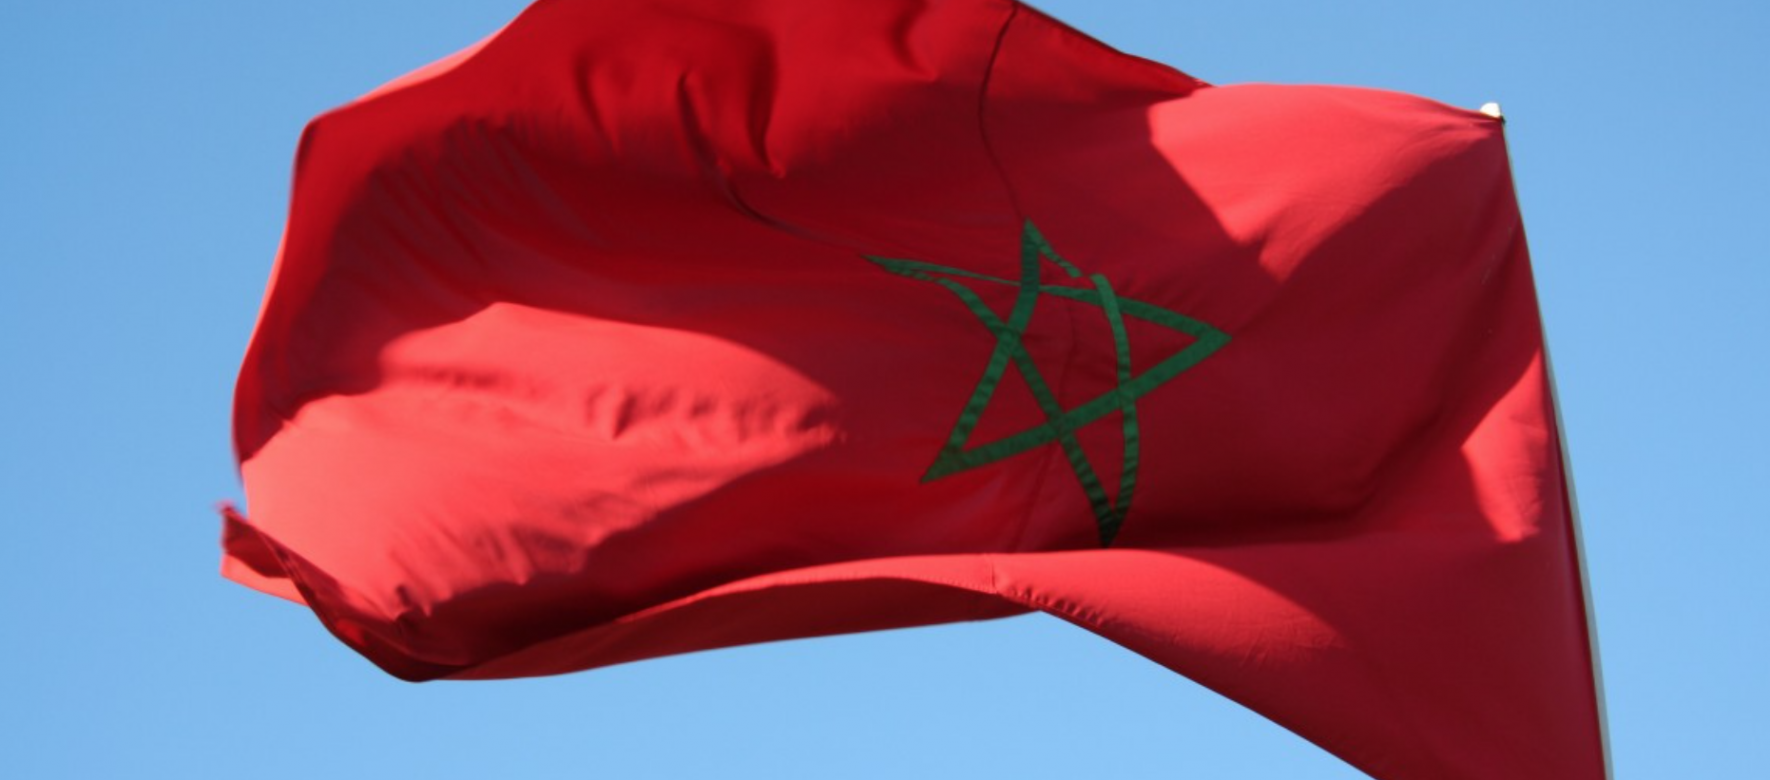 Le Maroc suspend ses relations diplomatiques avec l’Allemagne en raison de malentendus profonds à priori sur le Sahara occidental